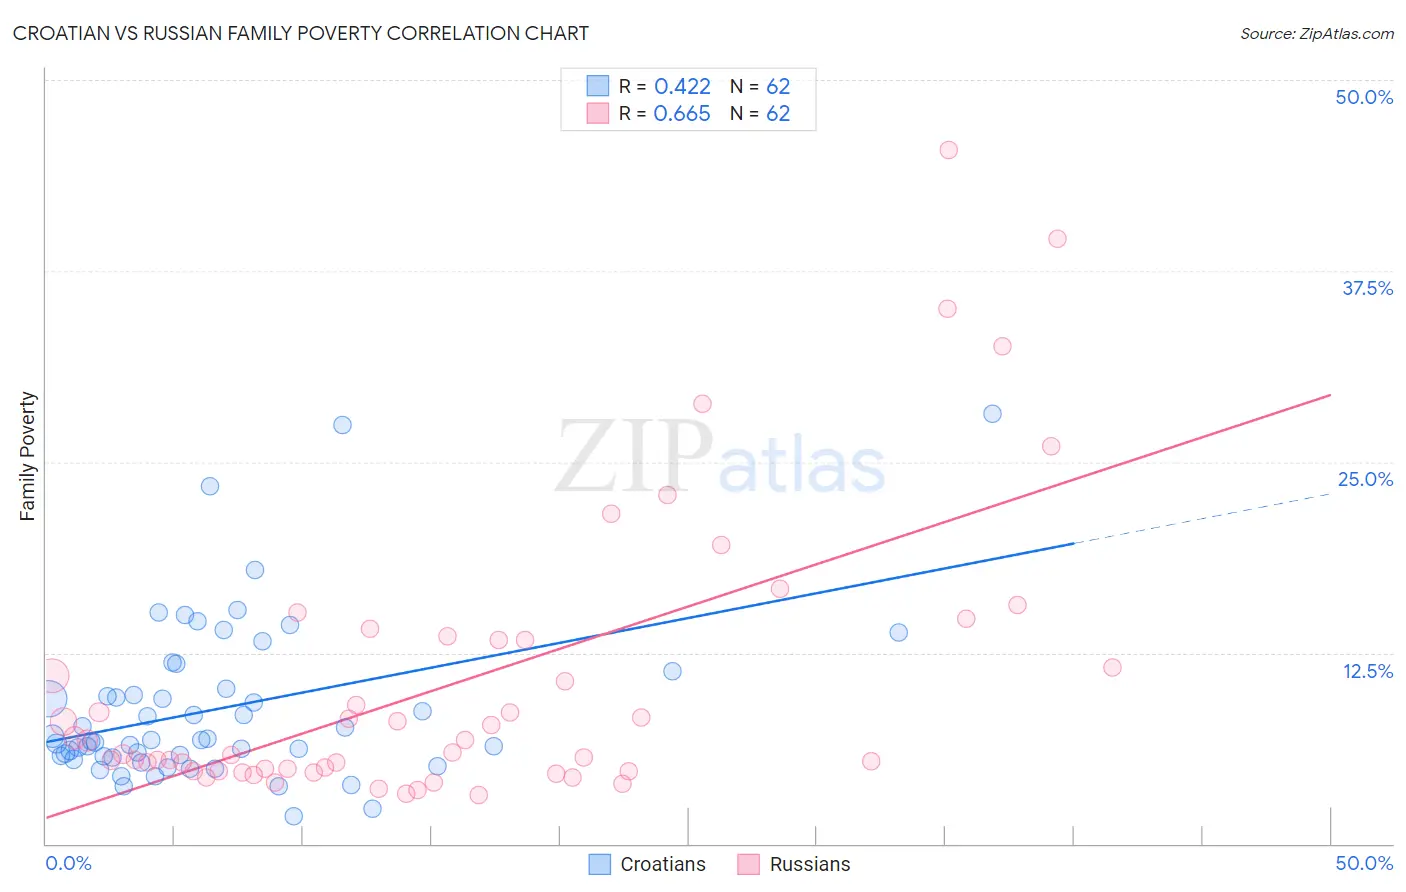 Croatian vs Russian Family Poverty